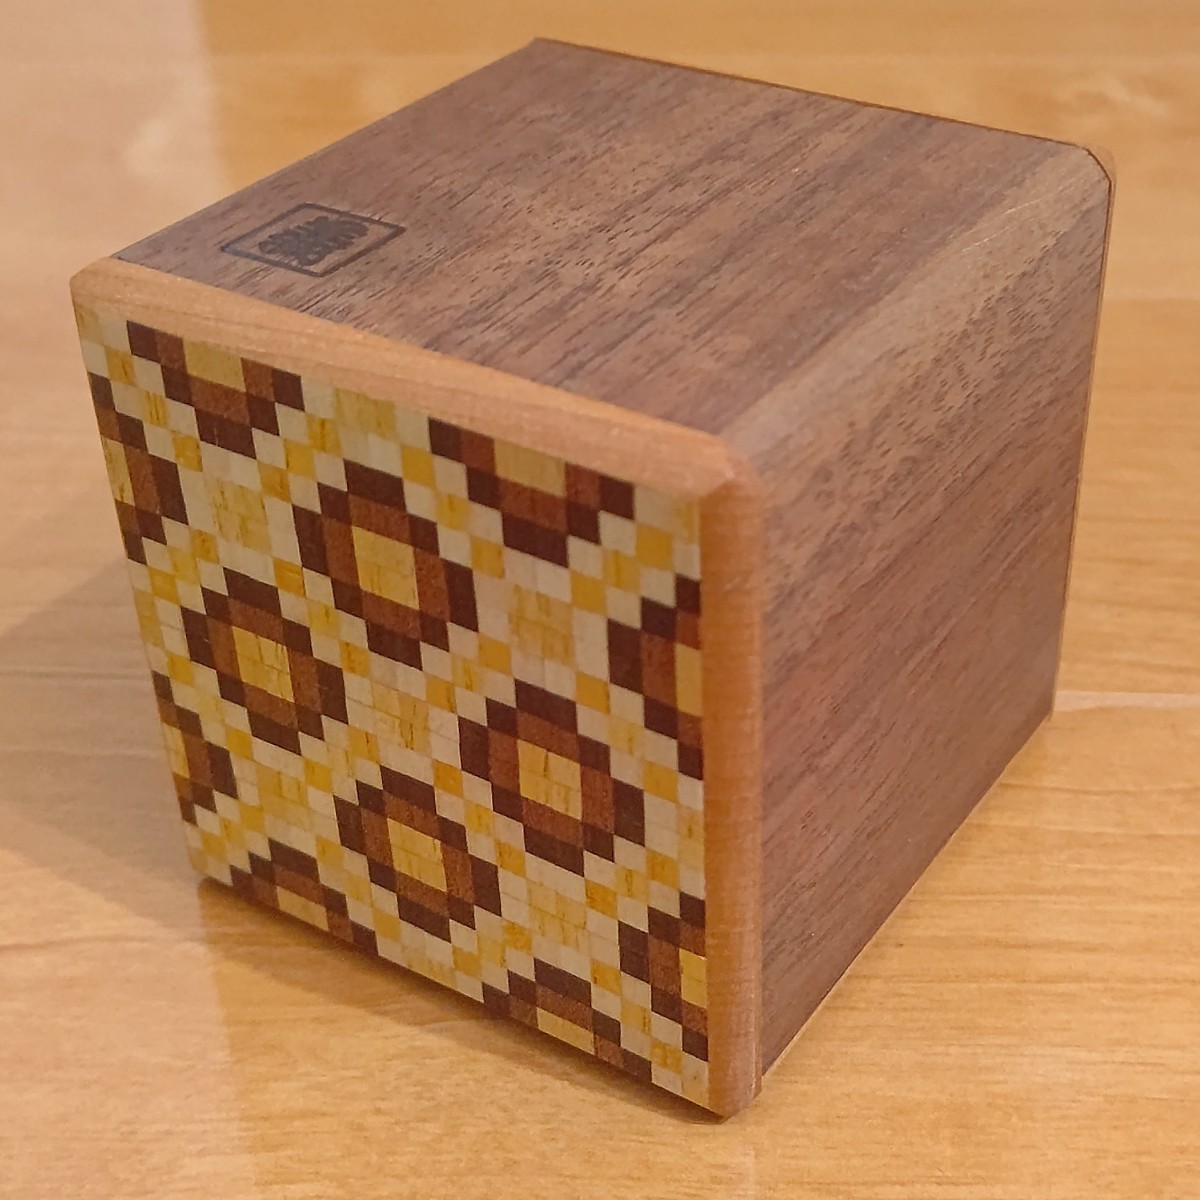 からくり創作研究会 箱根木楽 二宮義之の手仕事 寄木細工 秘密箱 カラクリ箱